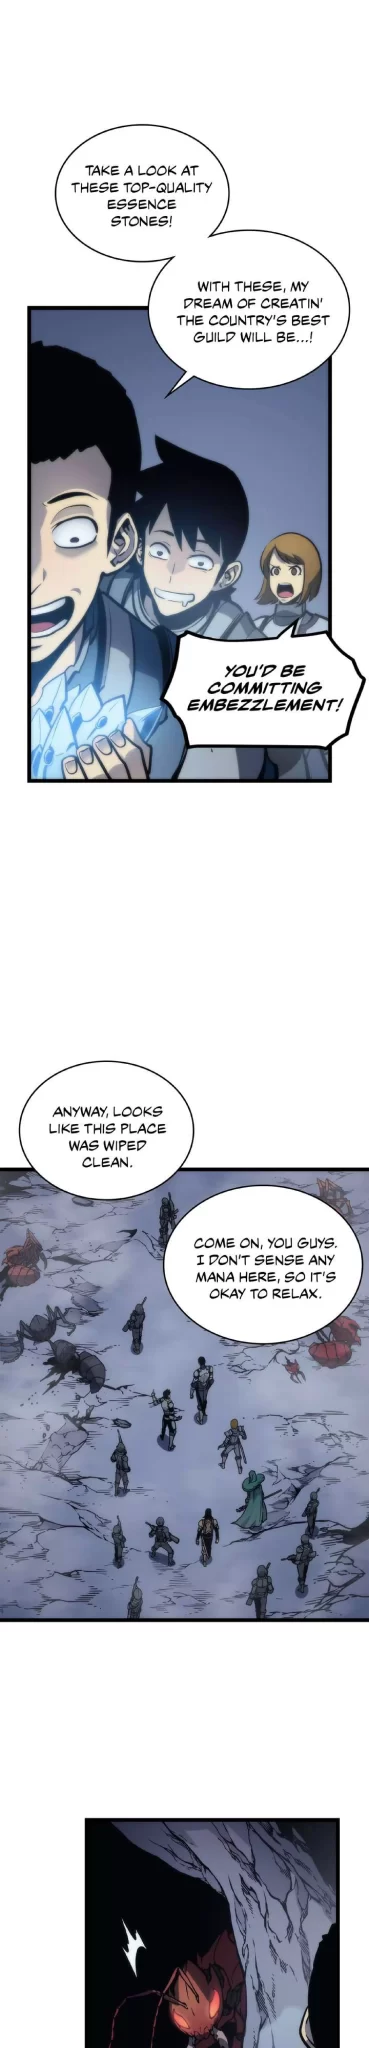 Solo Leveling Manga Manga Chapter - 107 - image 16